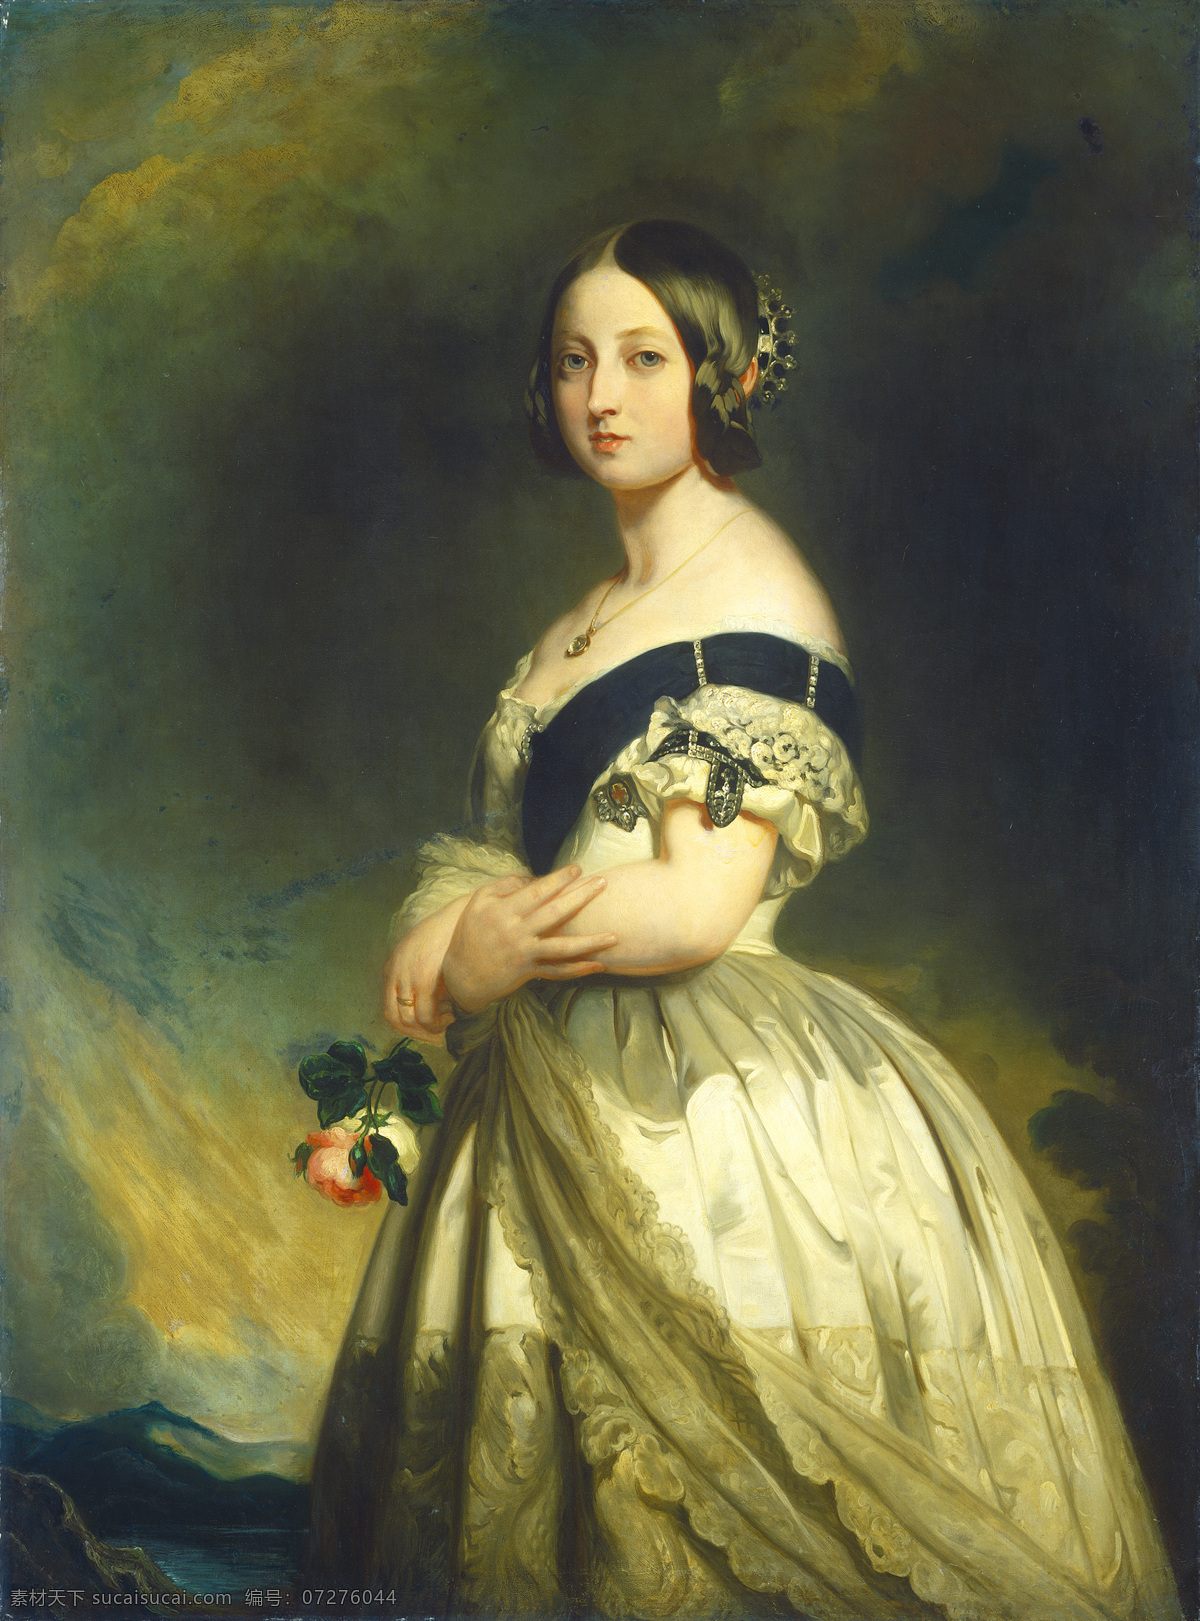 英国 女王 维多利亚 温特哈特作品 德国画家 少女时期 汉诺威王朝 19世纪油画 油画 文化艺术 绘画书法